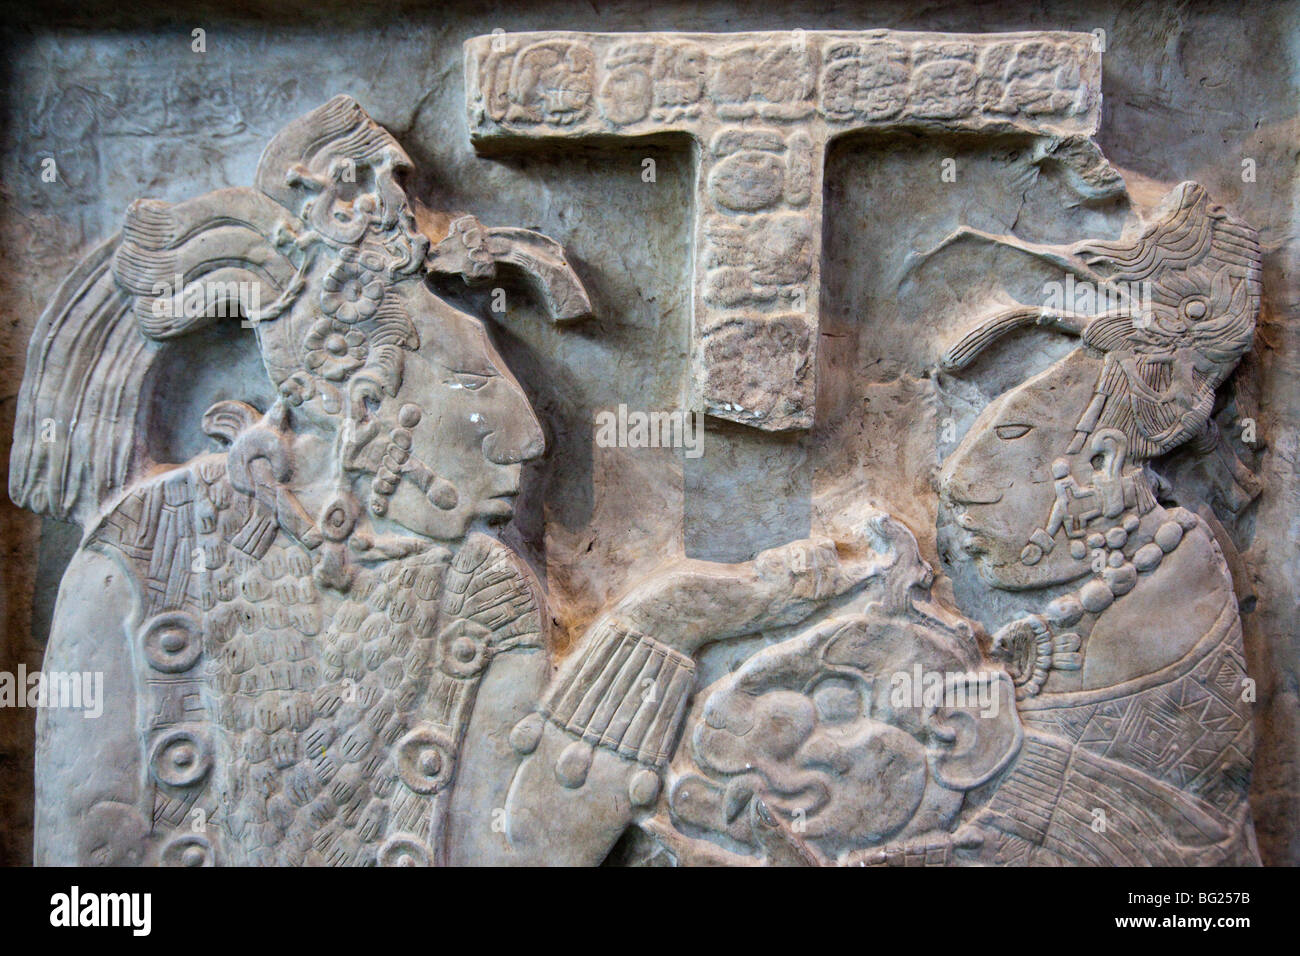 La sculpture maya de Yaxchilan, Musée National d'anthropologie de l'exposition dans la ville de Mexico Banque D'Images